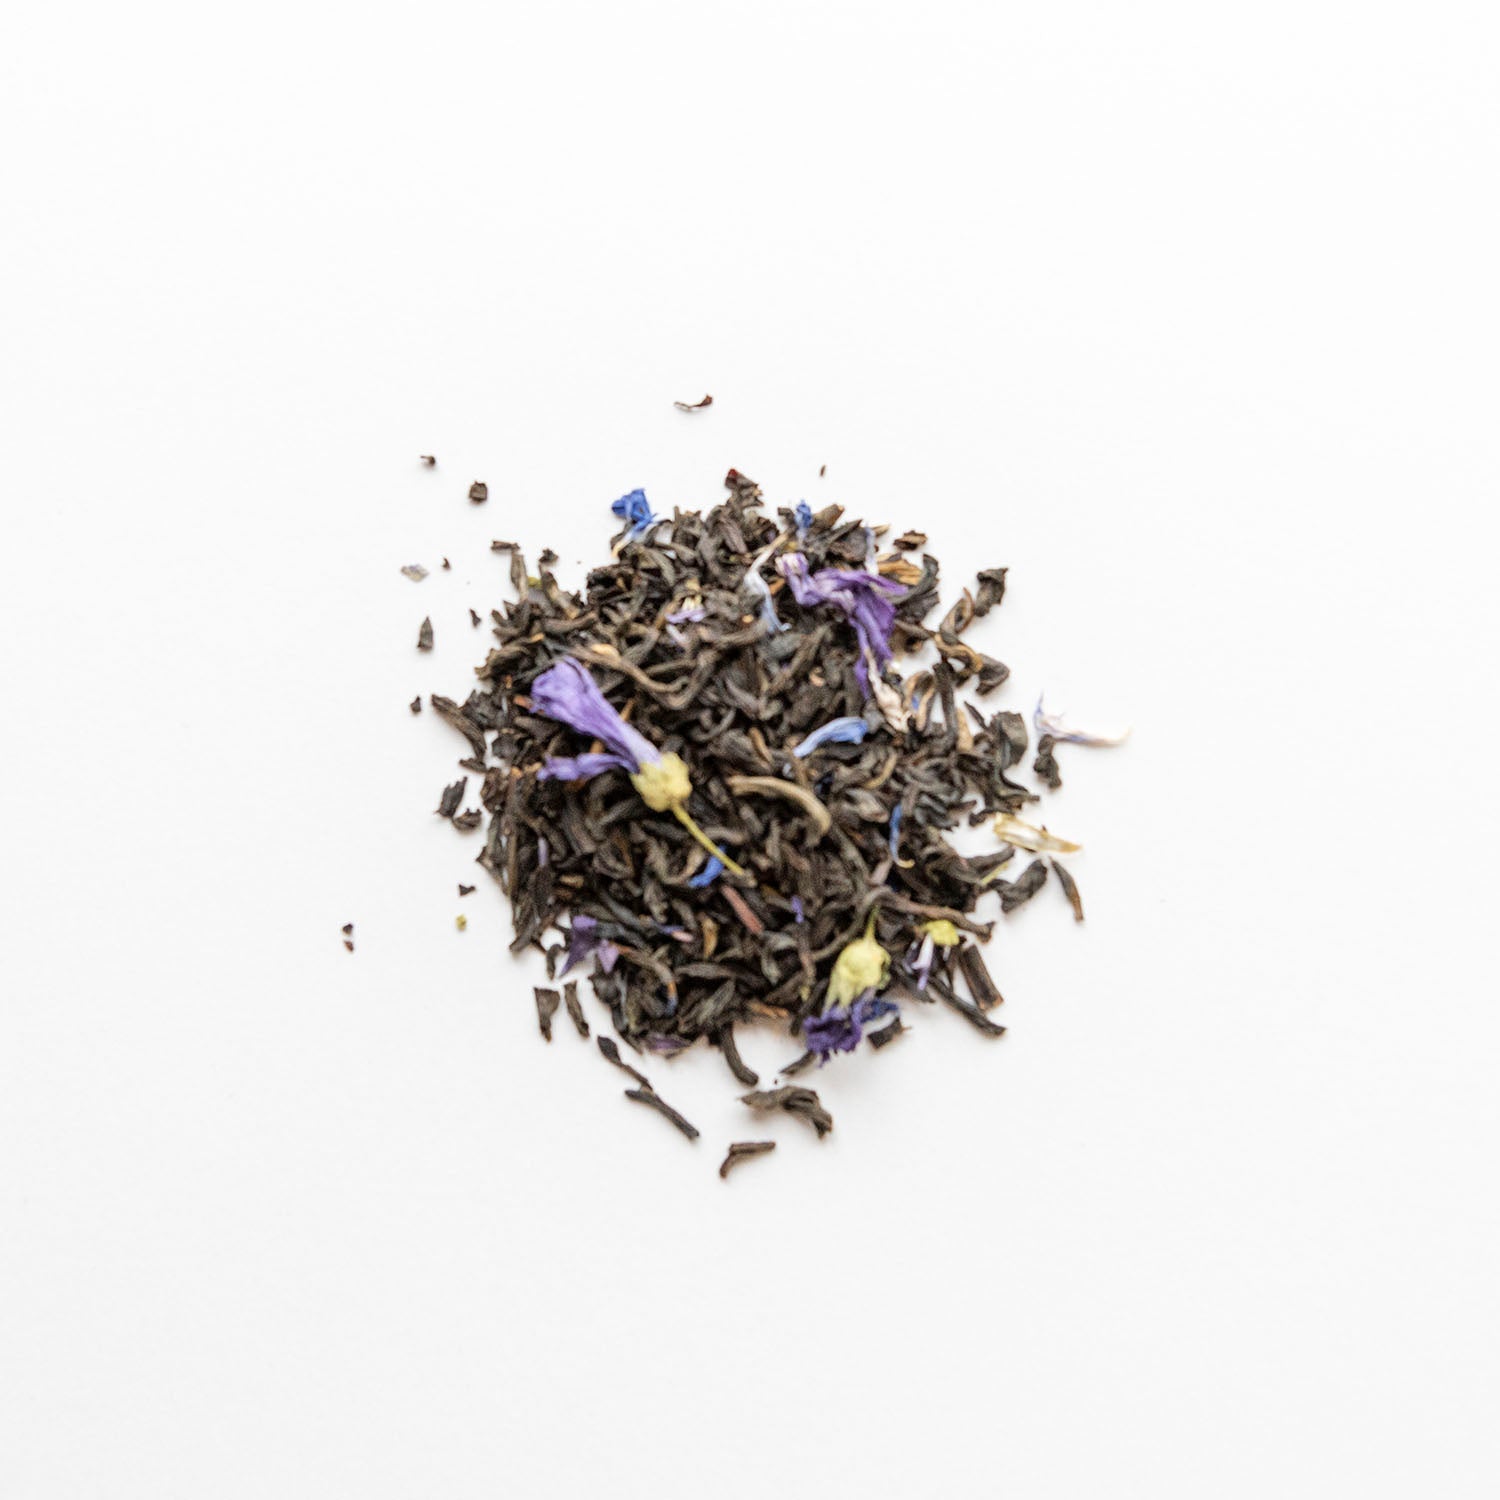 良質な雲南紅茶に特徴のあるオレンジベルガモットと矢車菊がブレンドされた高貴な香り高いアールグレイ